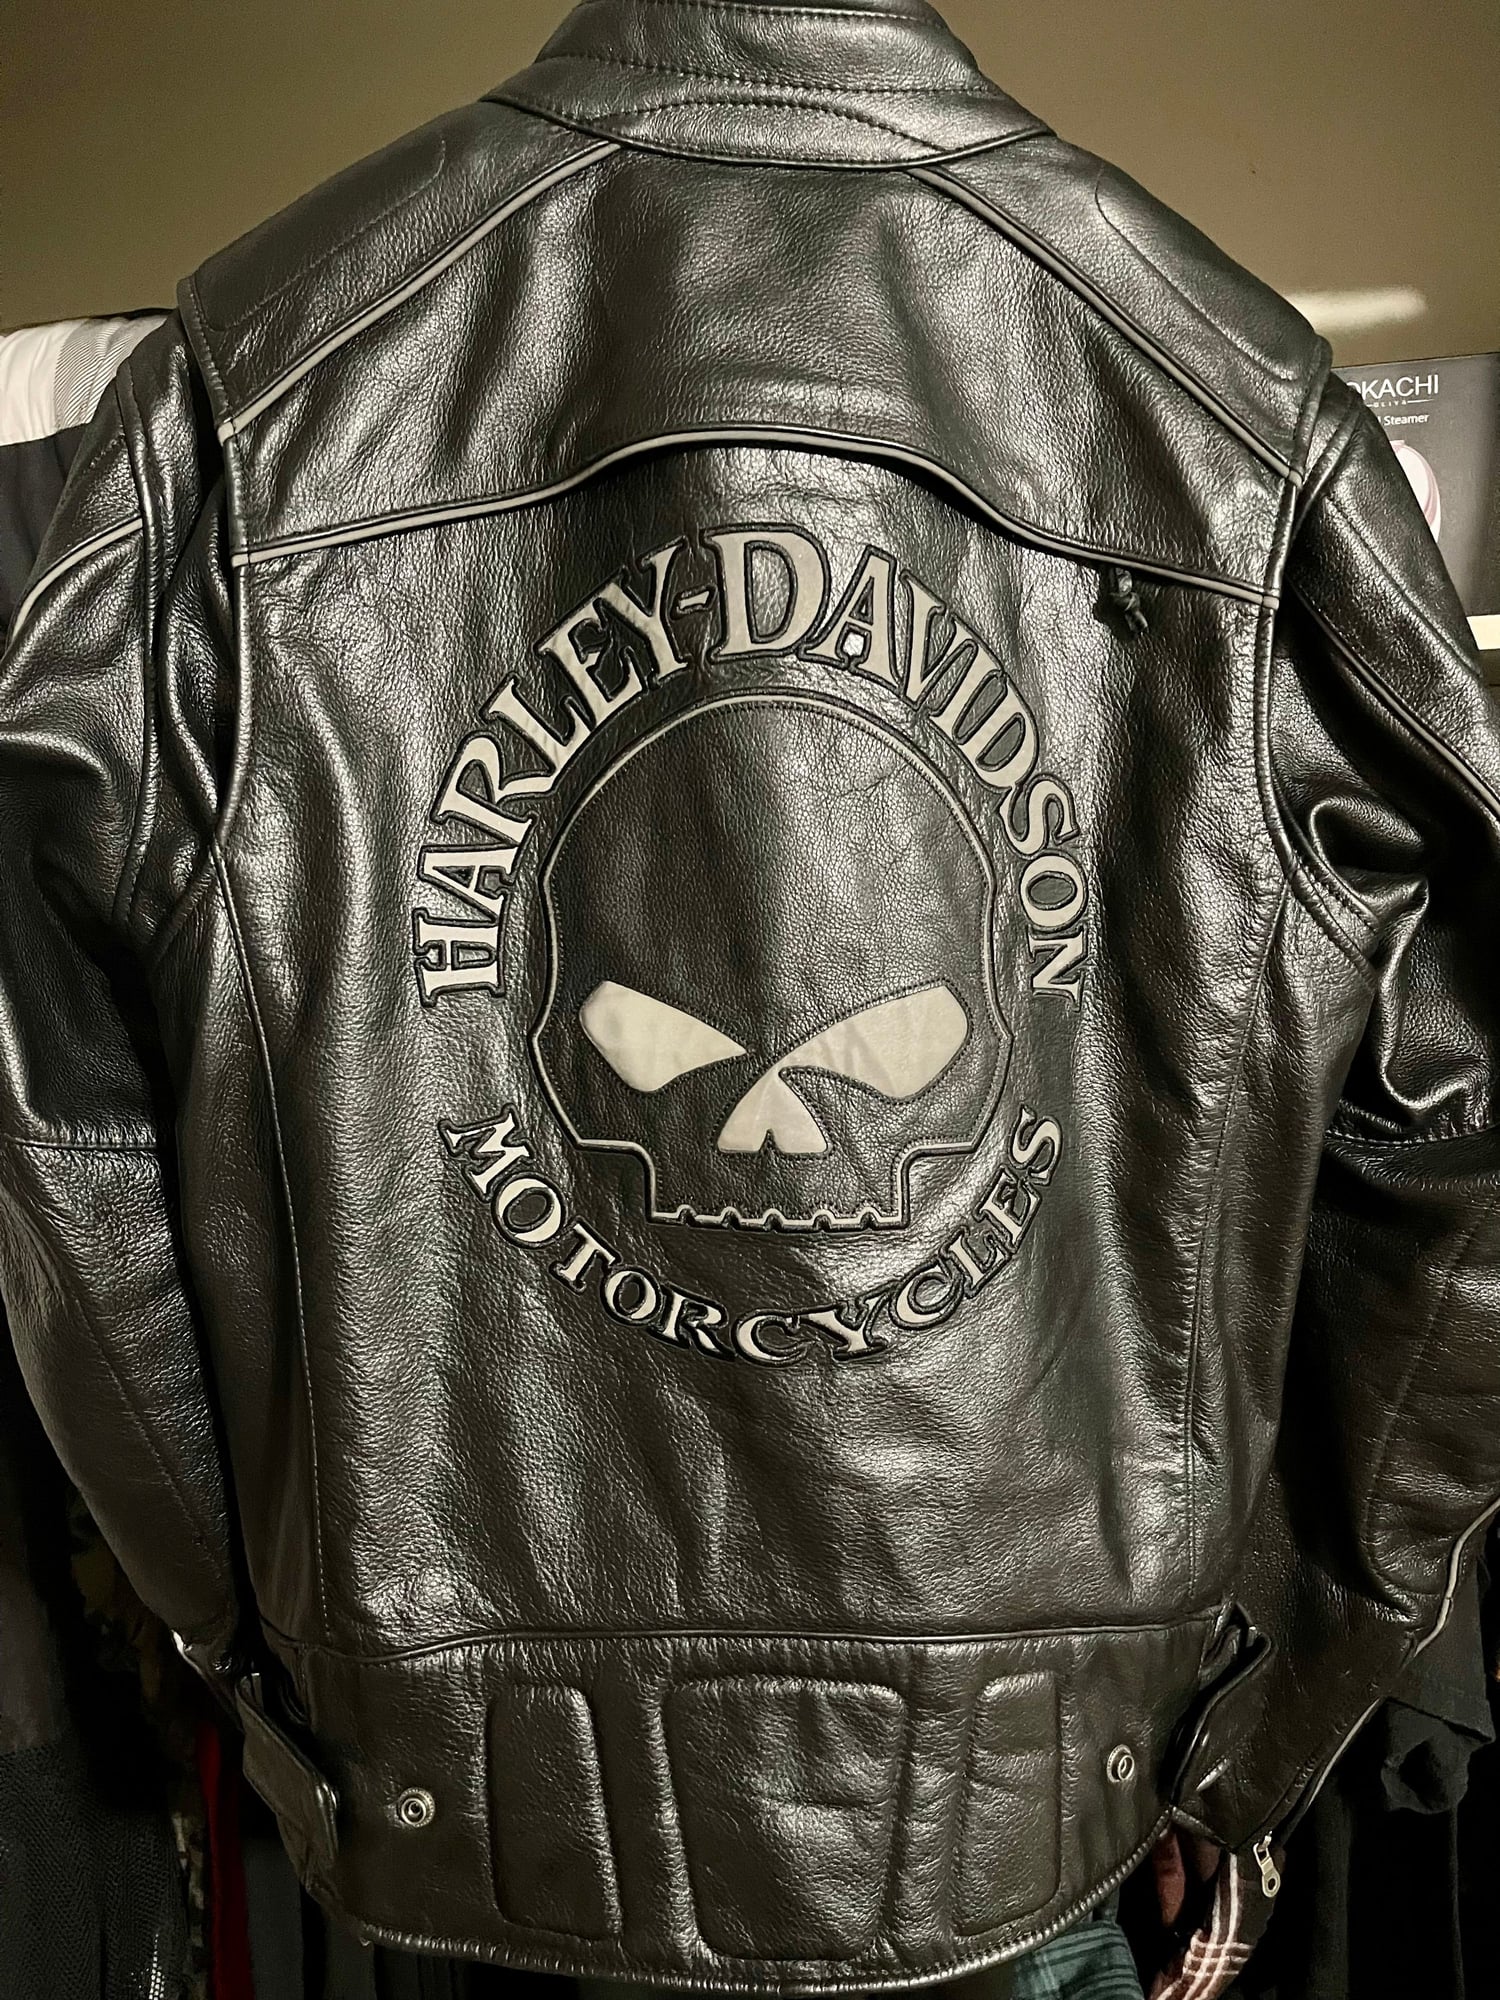 Willie G leather jacket - Harley Davidson Forums